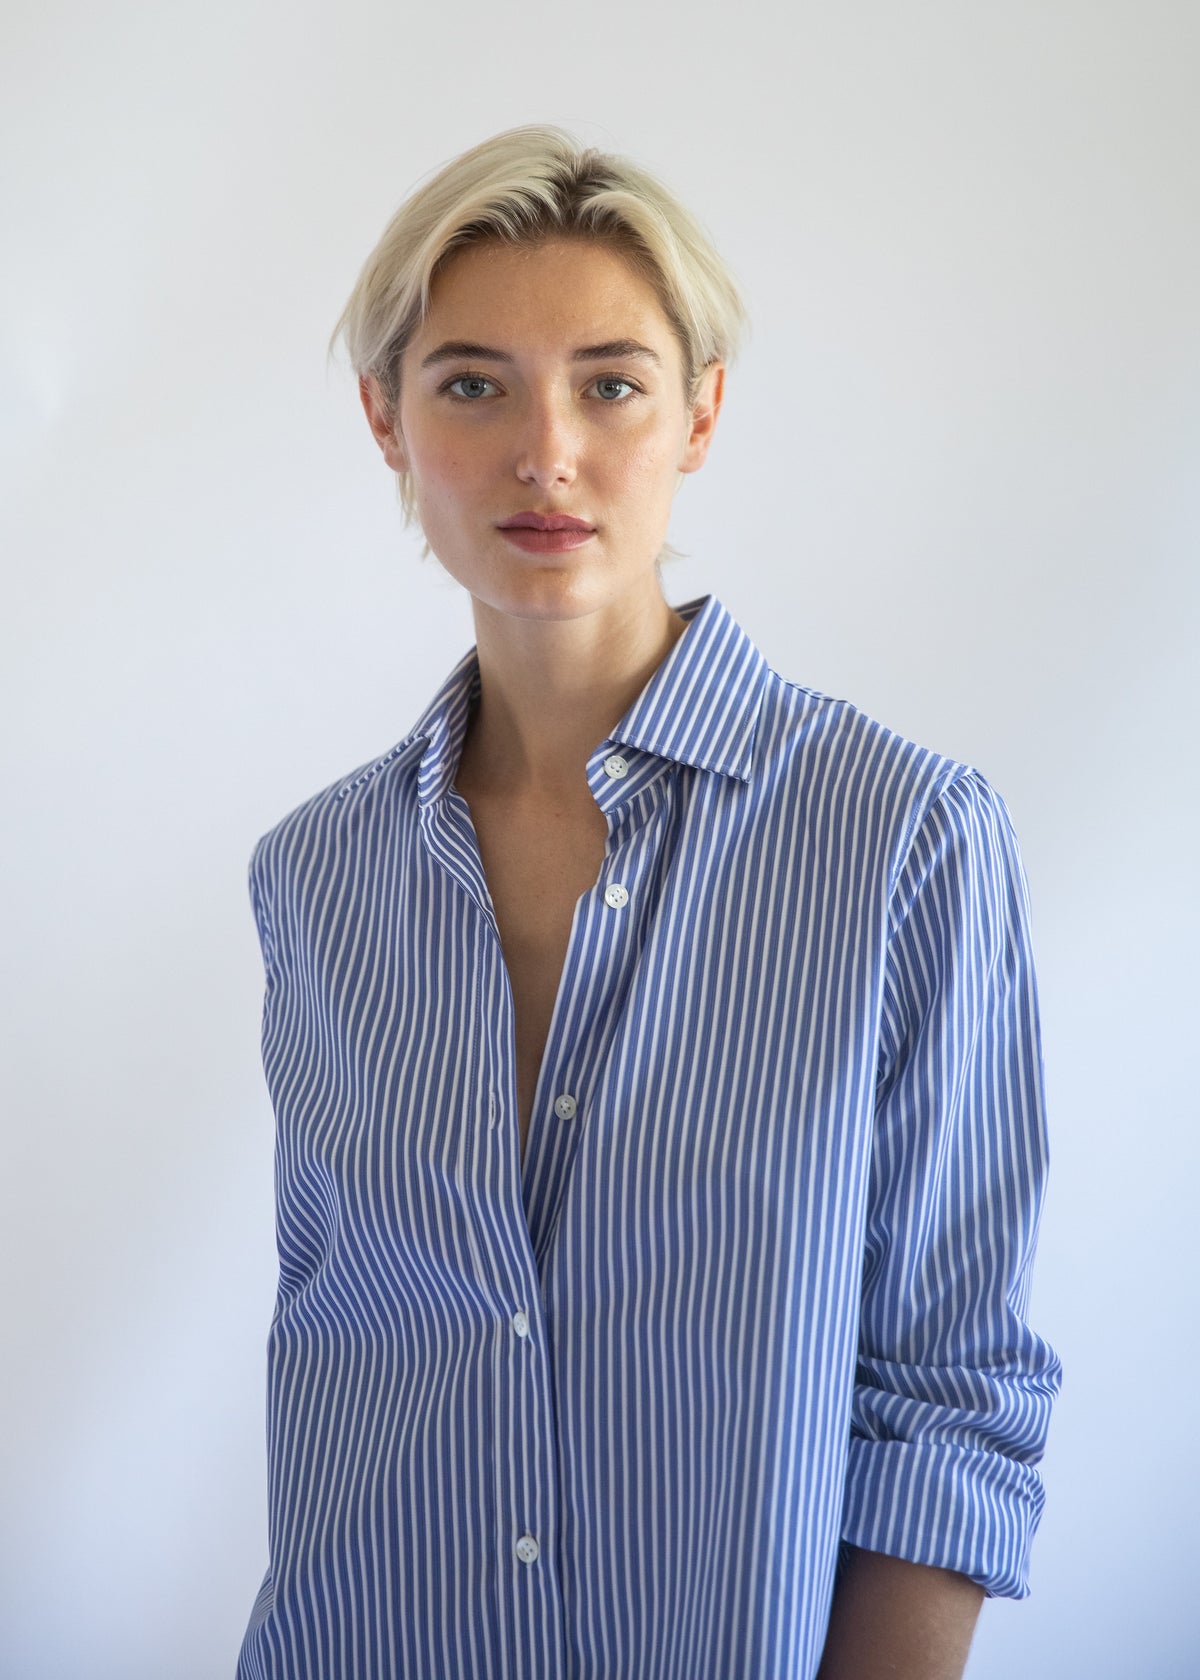 Gemma Button Up Shirt in Cornflower Stripe Cotton Poplin